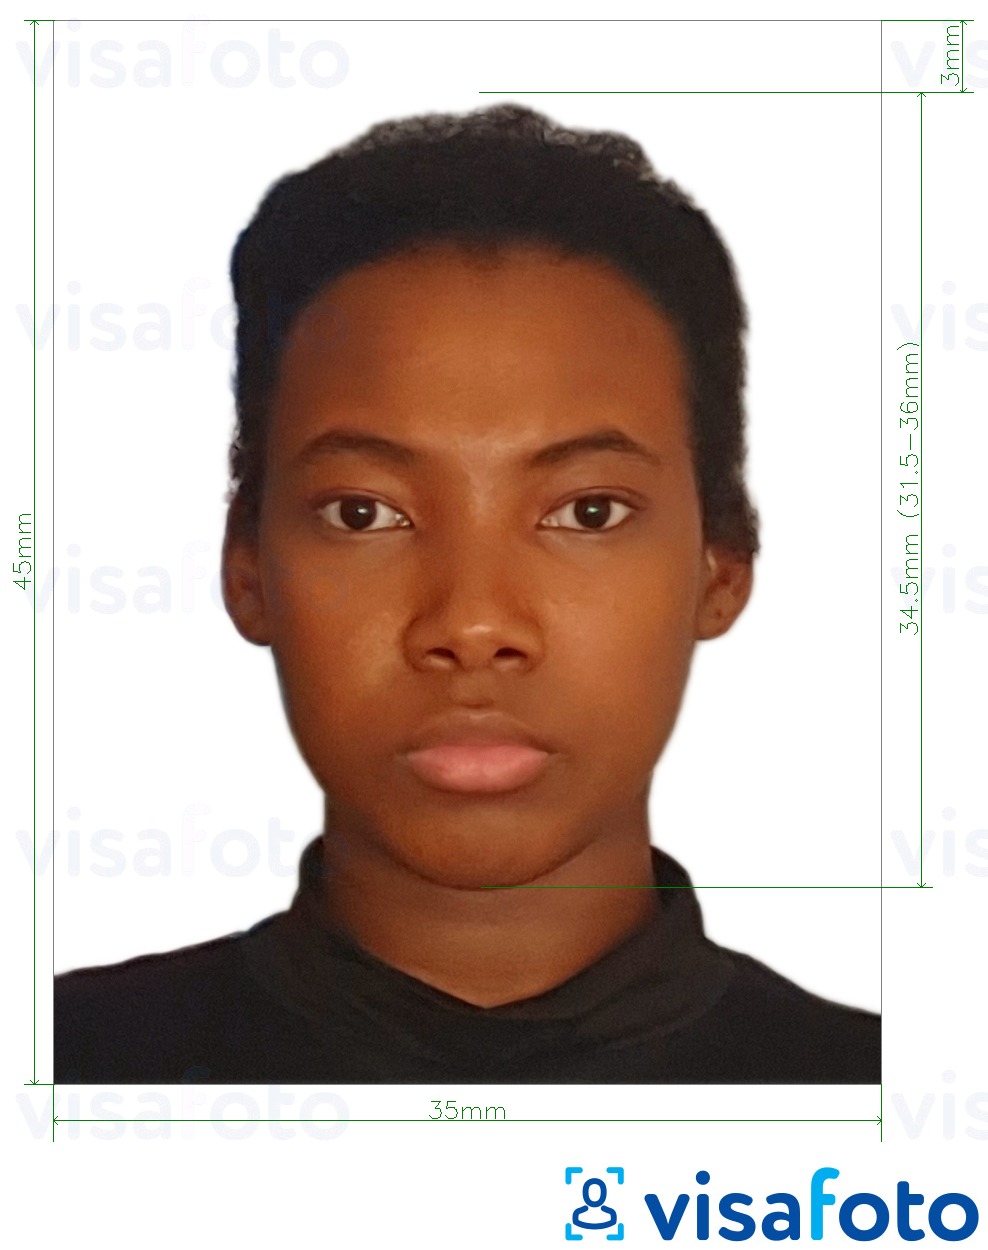 Przykład zdjęcia dla Seszele paszportowe 35x45 mm (do 45x50 mm) z podaniem dokładnego rozmiaru.